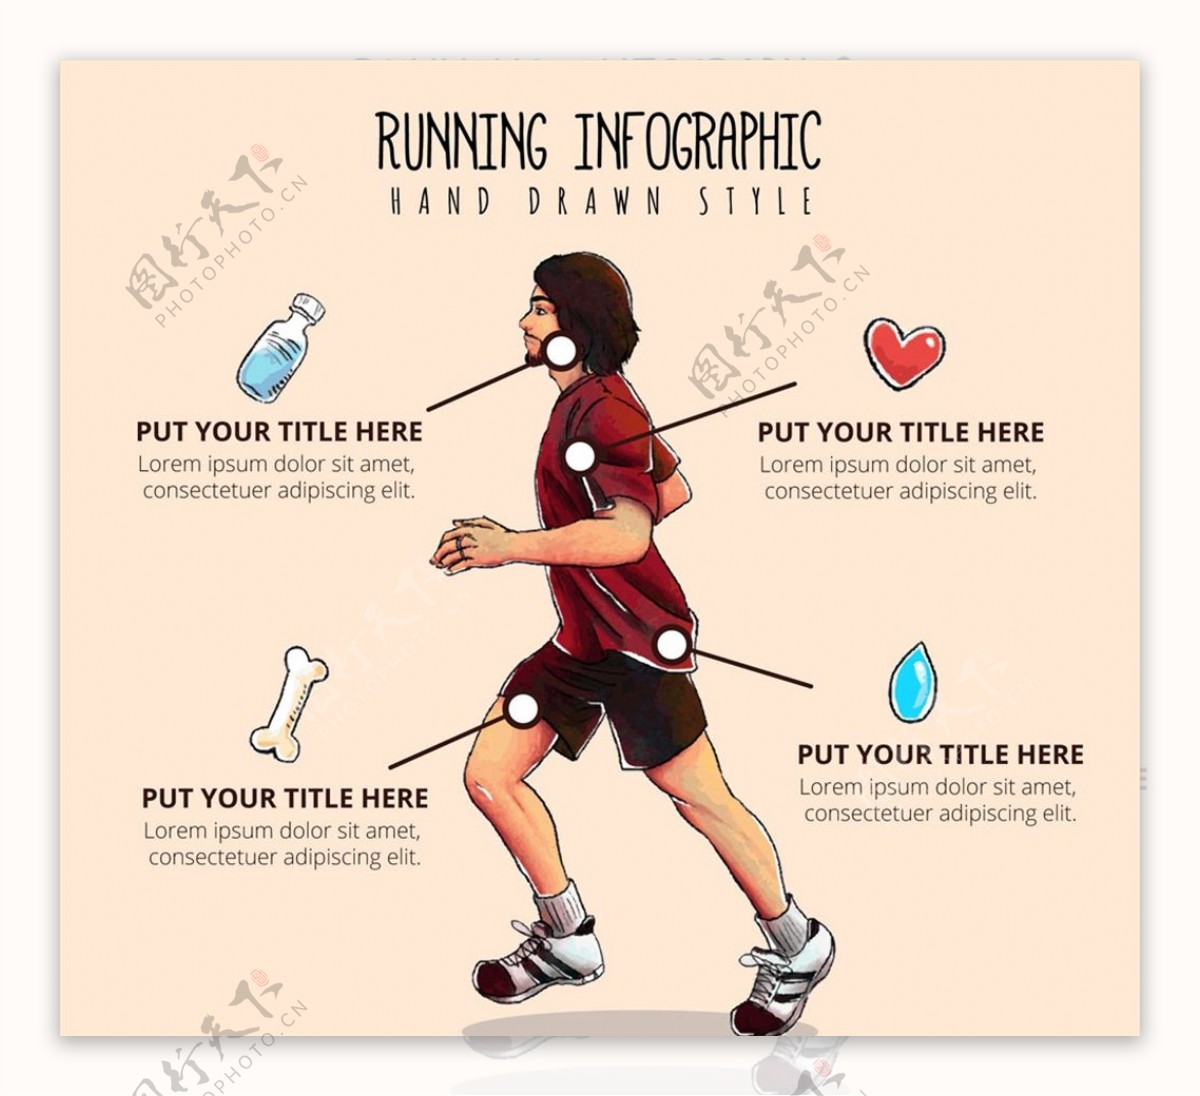 跑步男子信息图图片